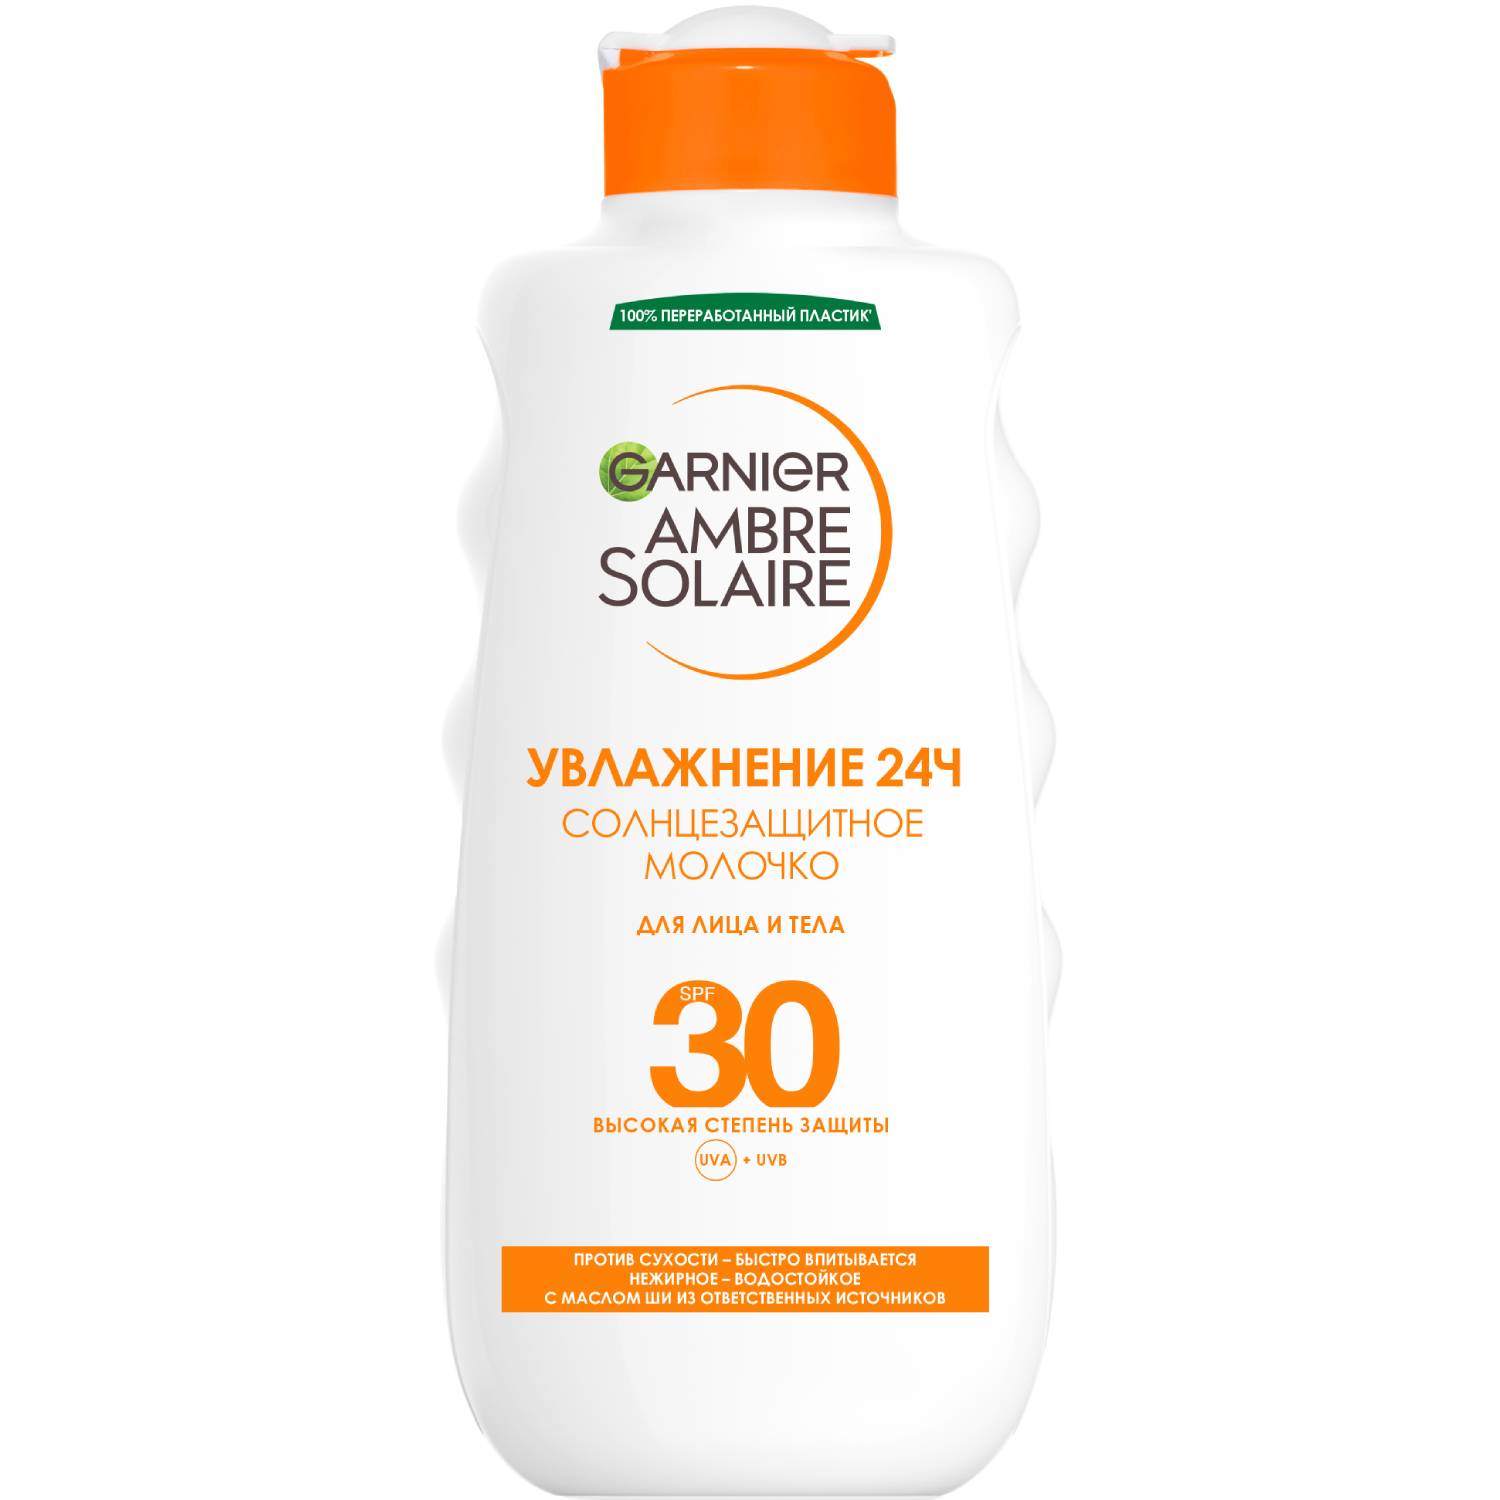 Garnier Солнцезащитное водостойкое молочко для лица и тела SPF30, 200 мл (Garnier, Amber solaire)